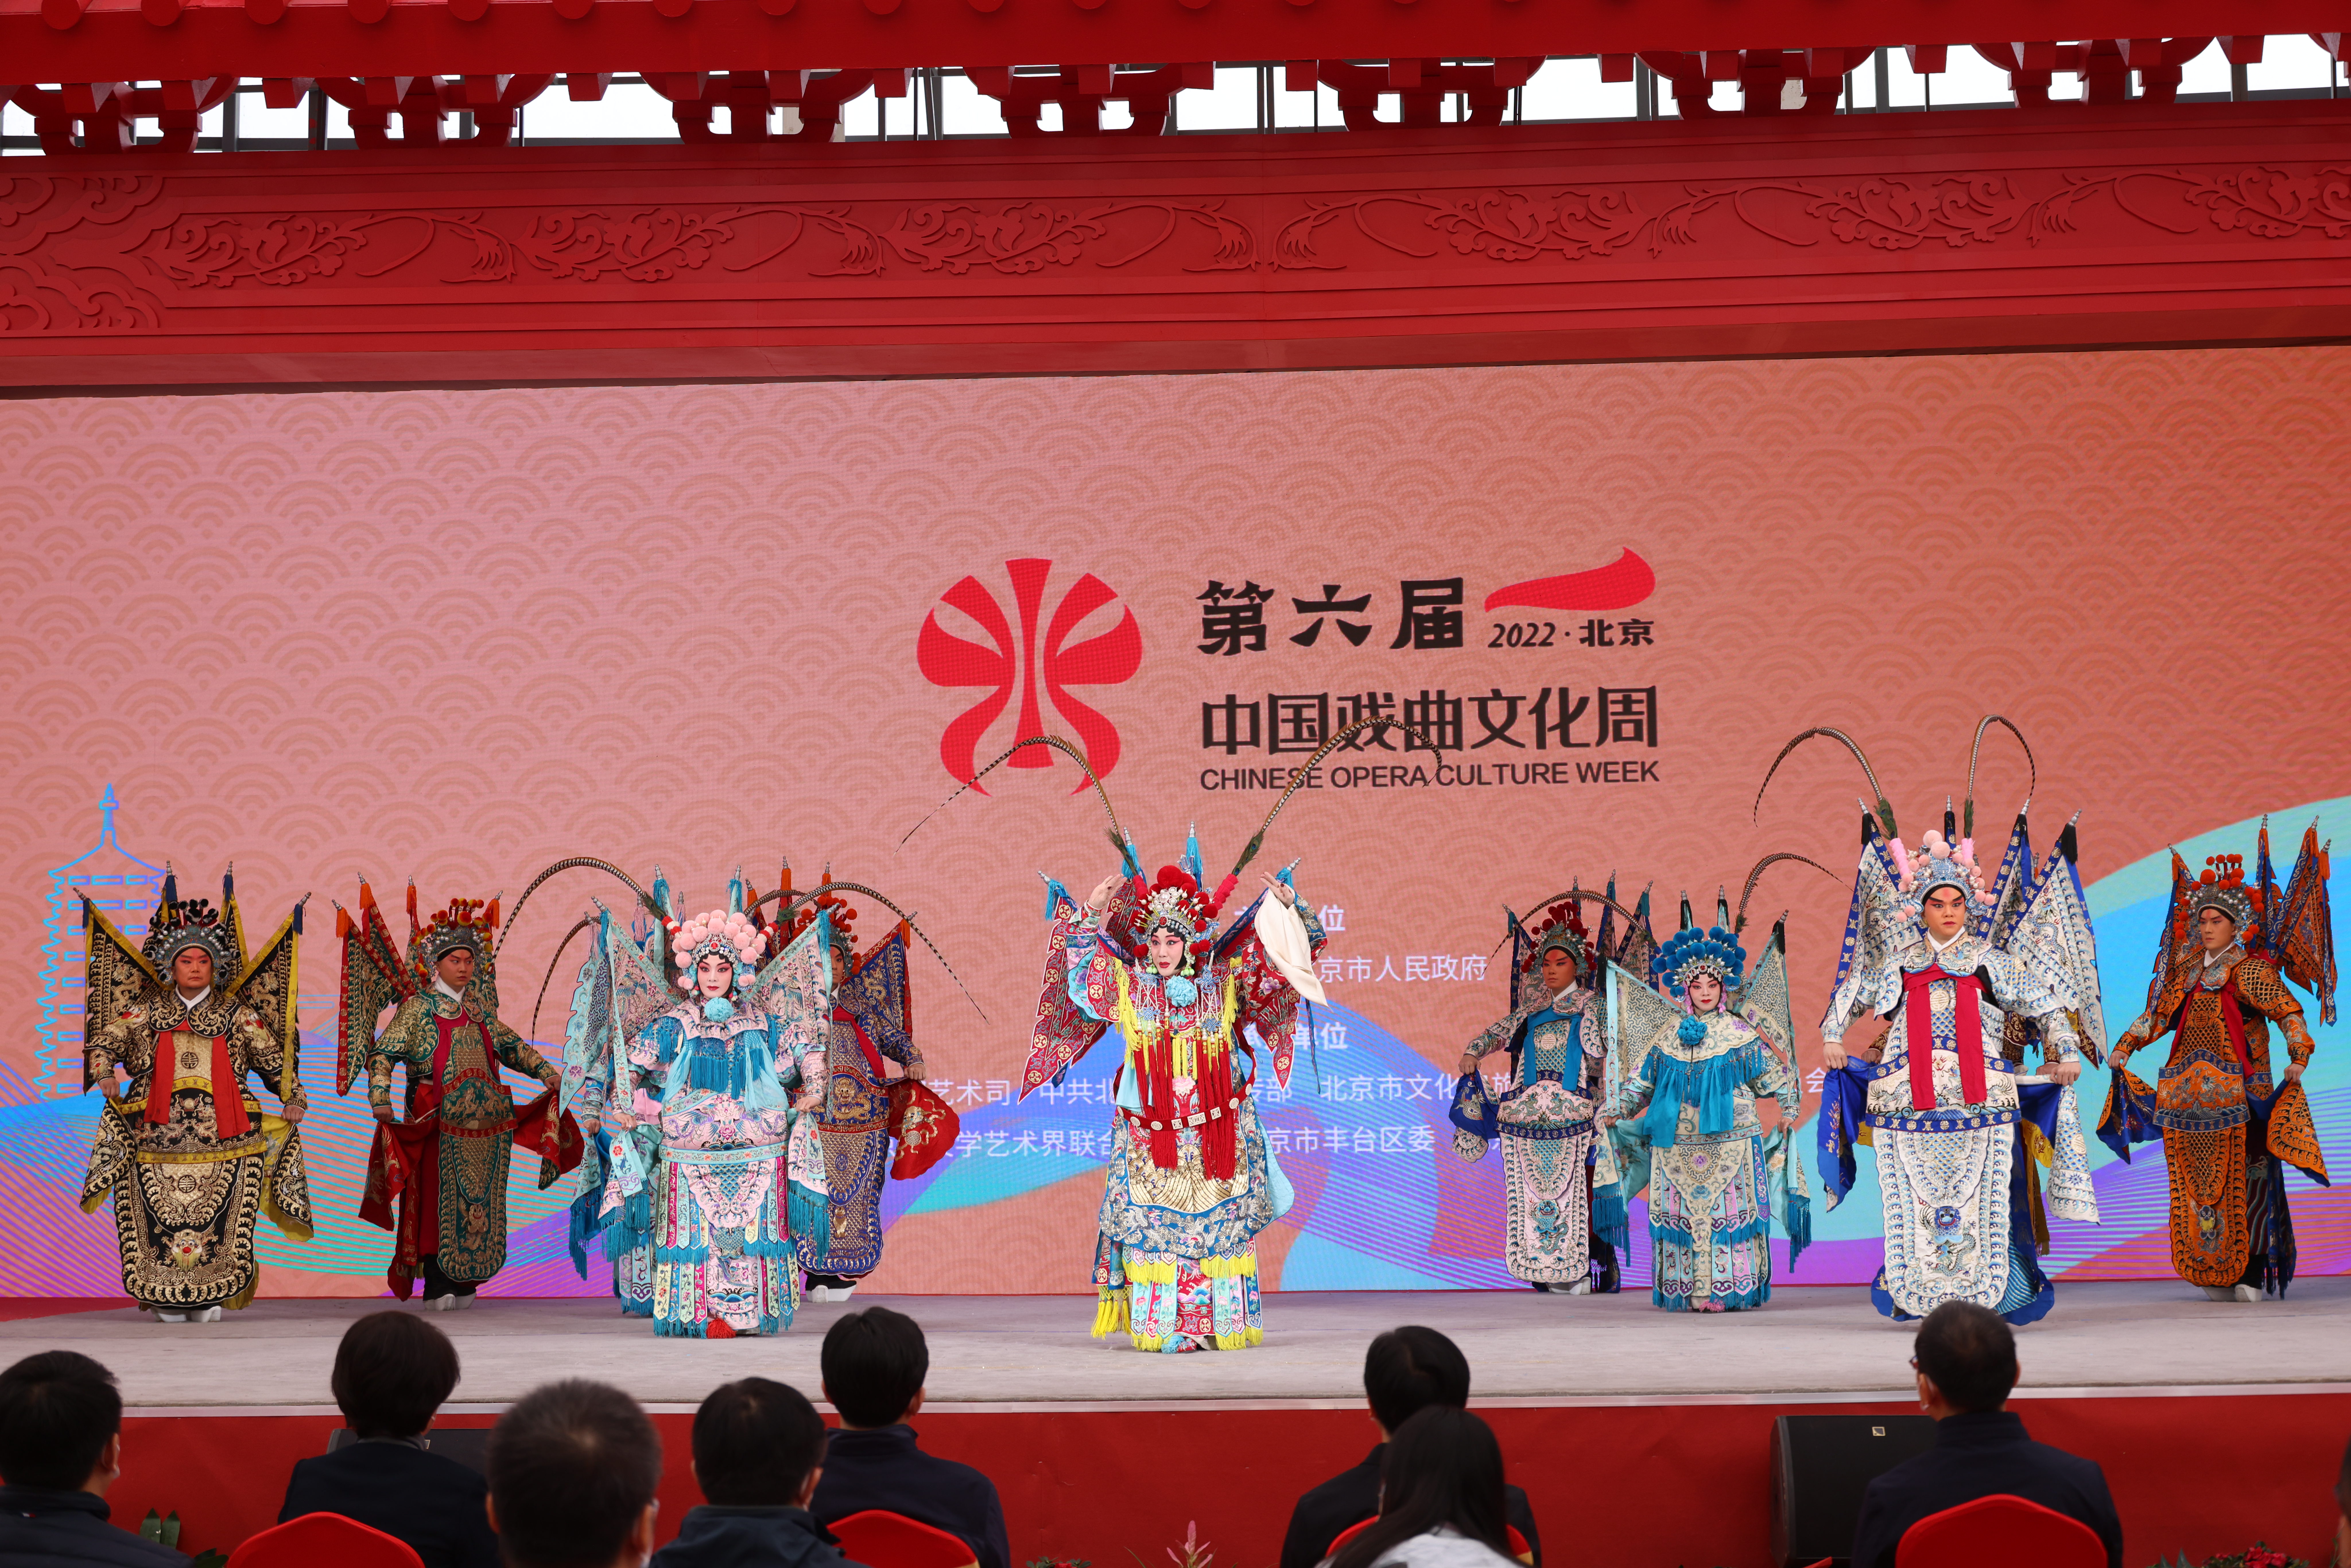 第六屆中國戲曲文化周舉行開幕式